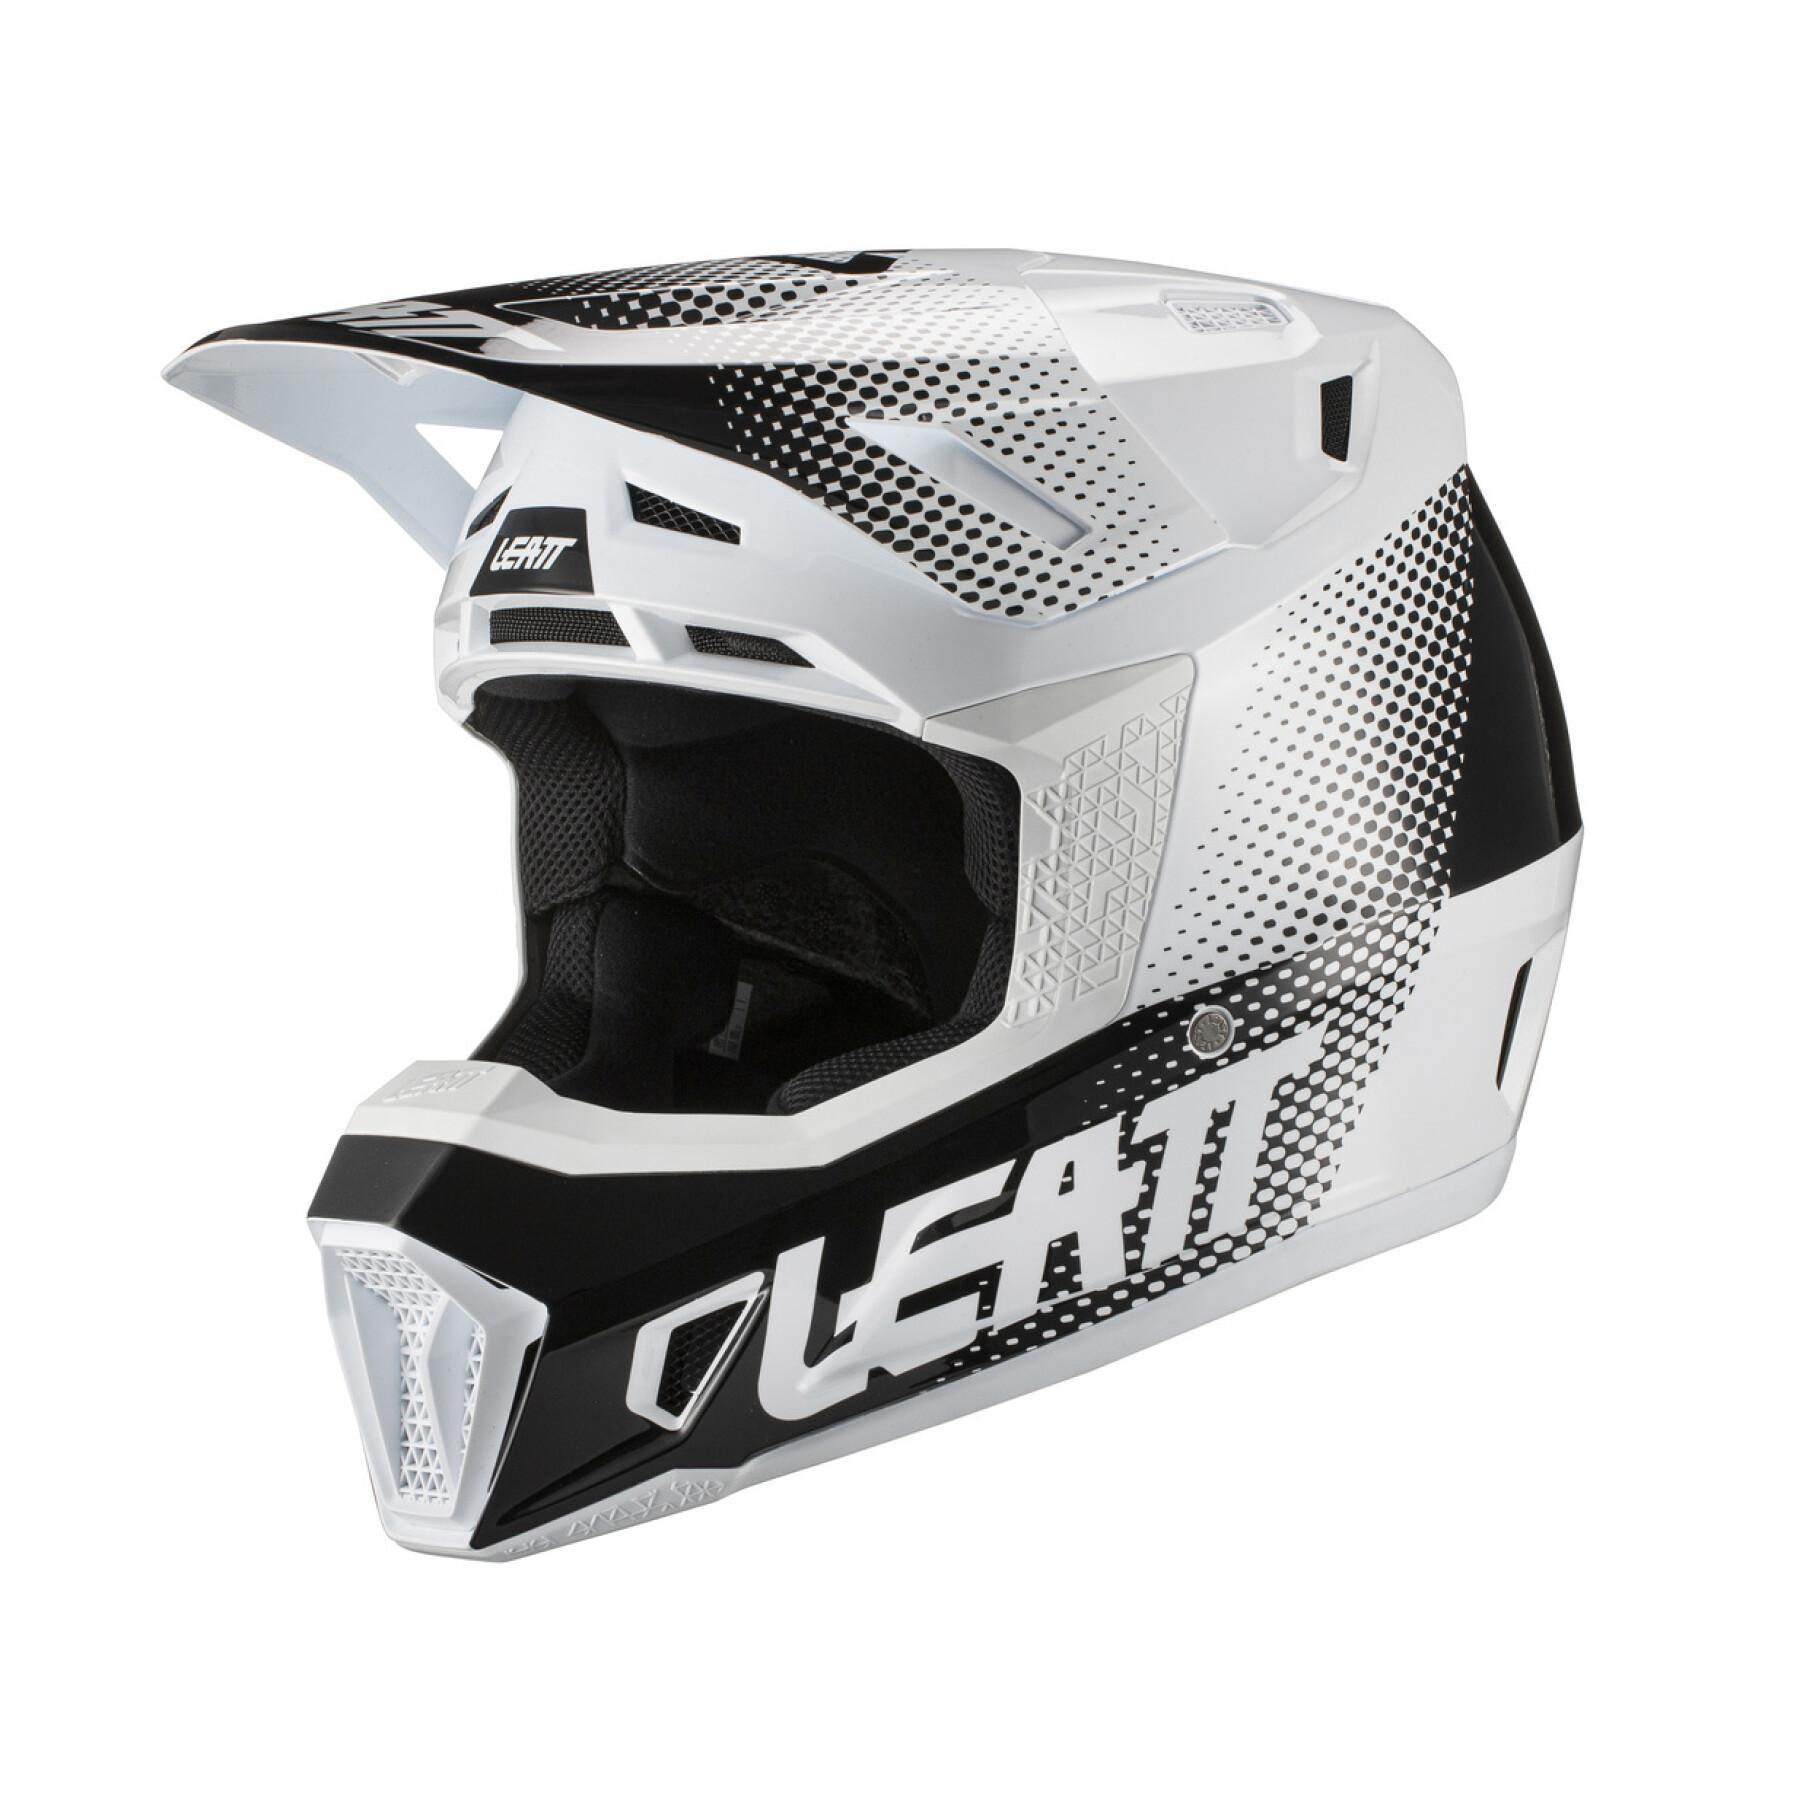 Casco da moto compreso di occhiali Leatt 7.5 V21.1